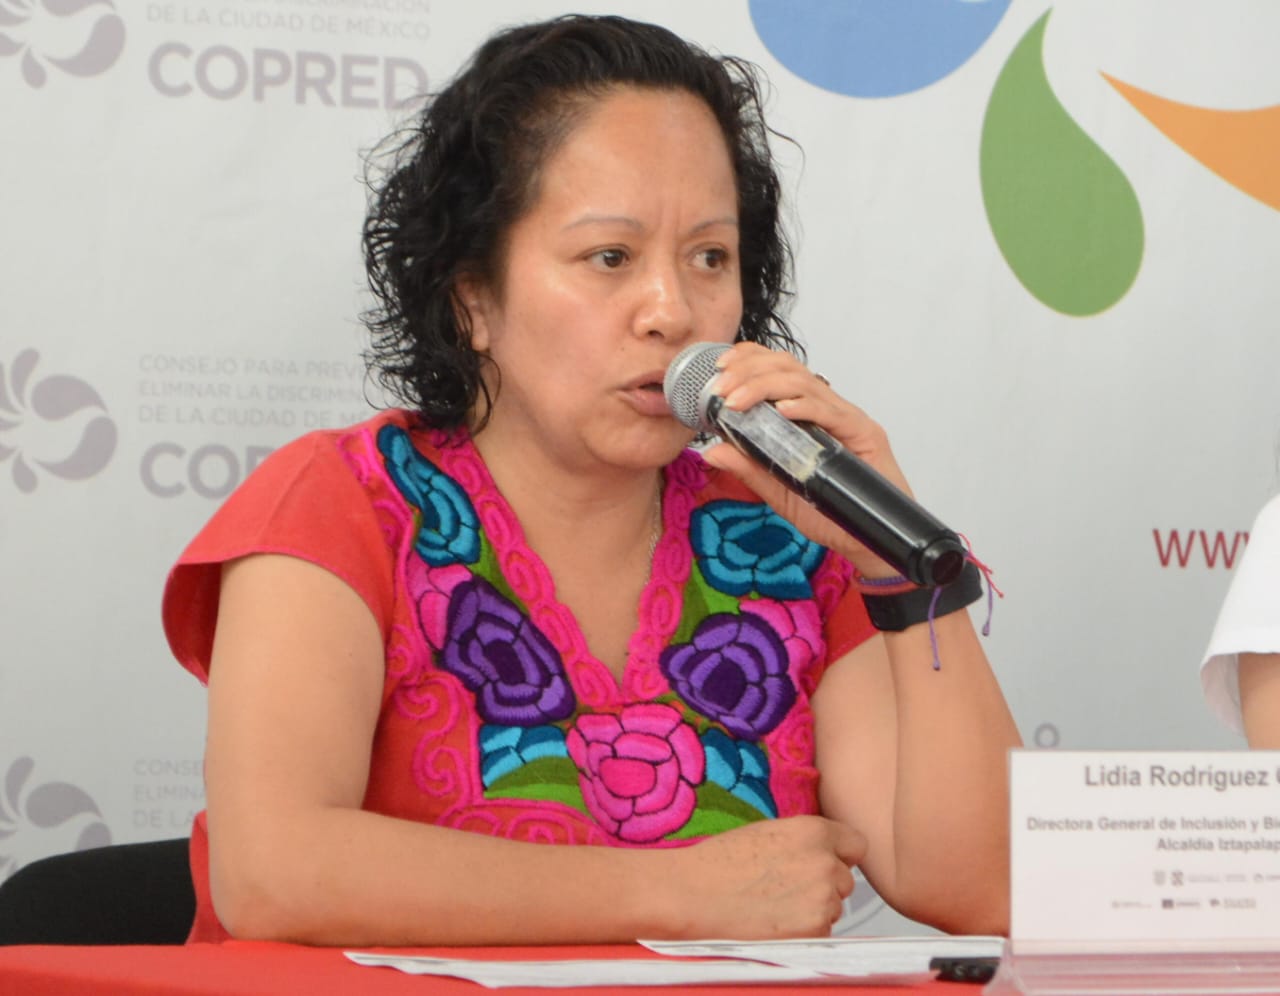 Doto de Lidia Rodríguez Chávez, Directora General de Inclusión y Bienestar Social de la Alcaldía Iztapalapa